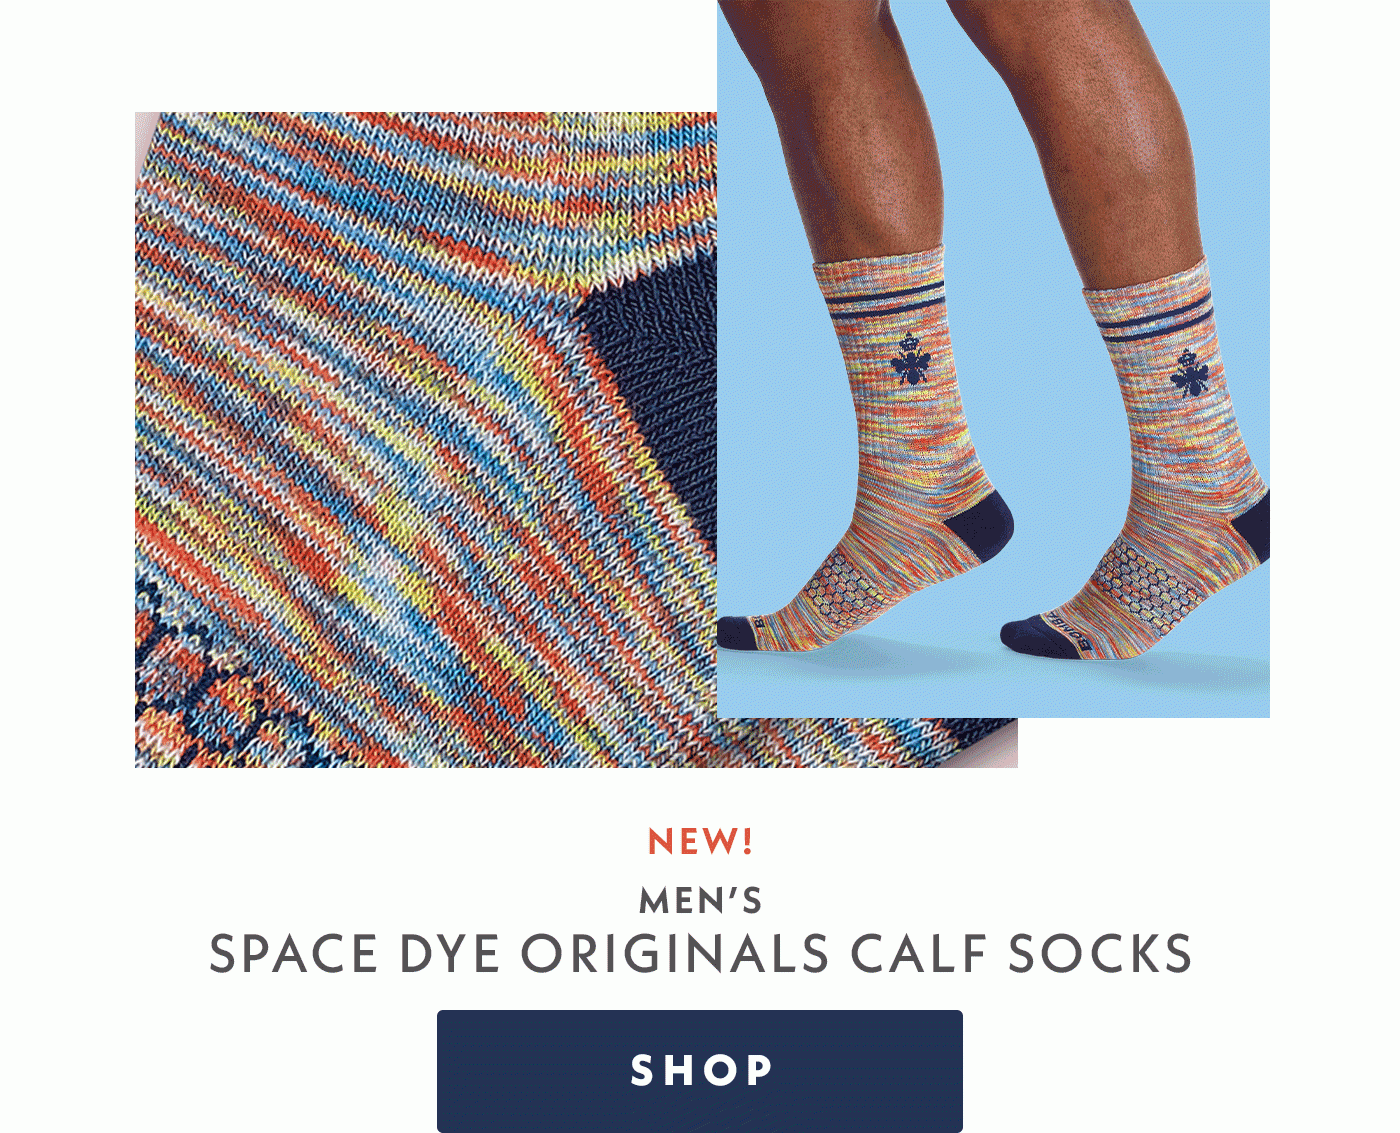 New! Men's Space Dye Originals Calf Socks | Shop